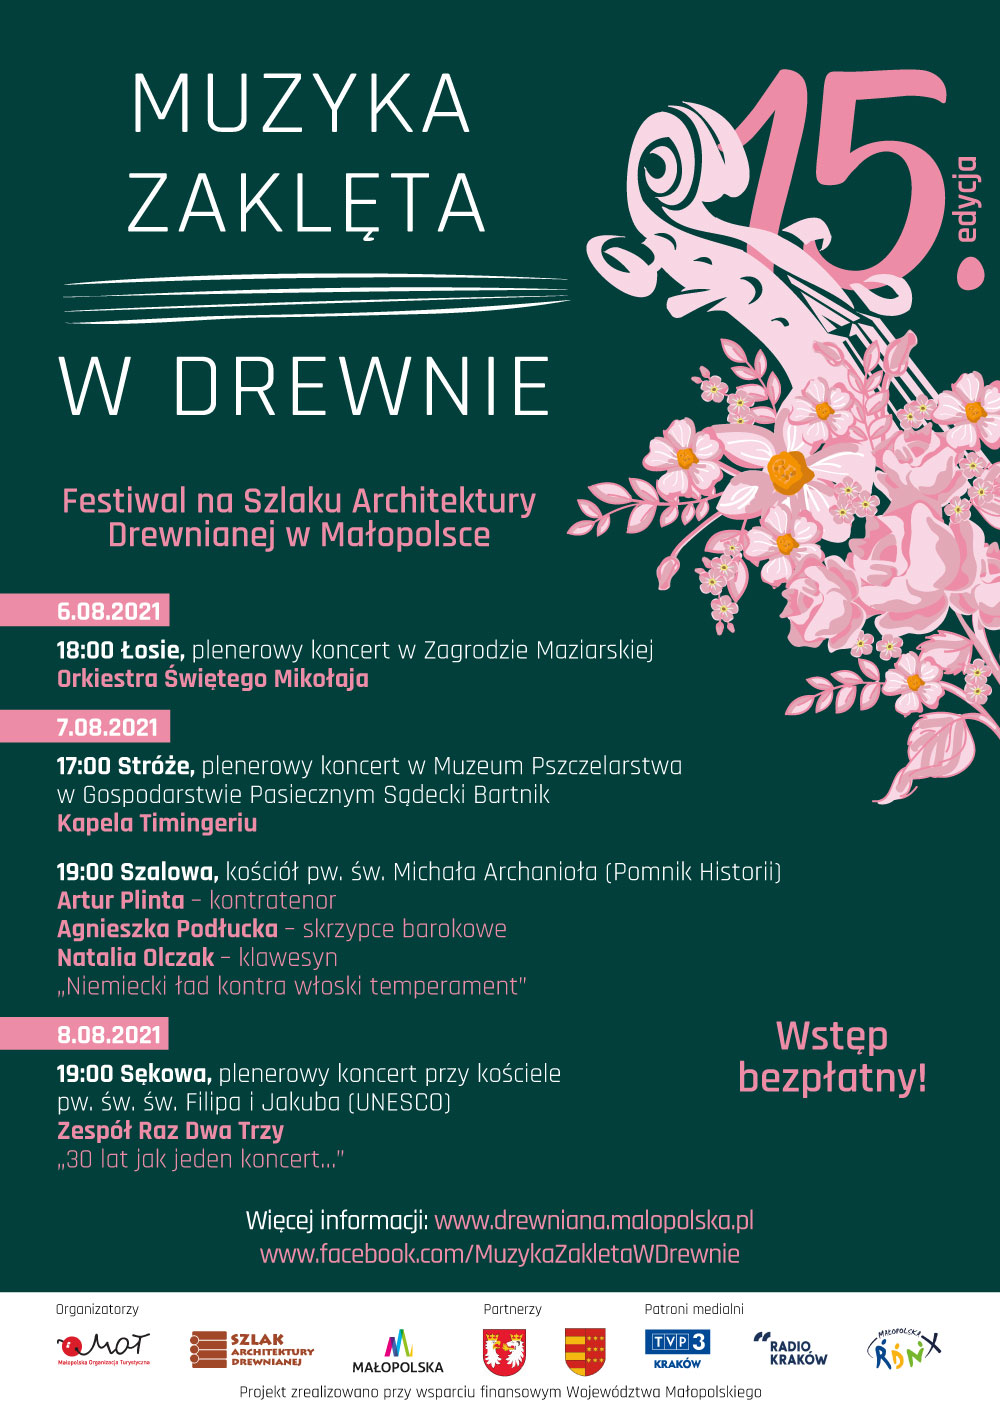 Plakat promujący festiwal pn. Muzyka Zaklęta w Drewnie.